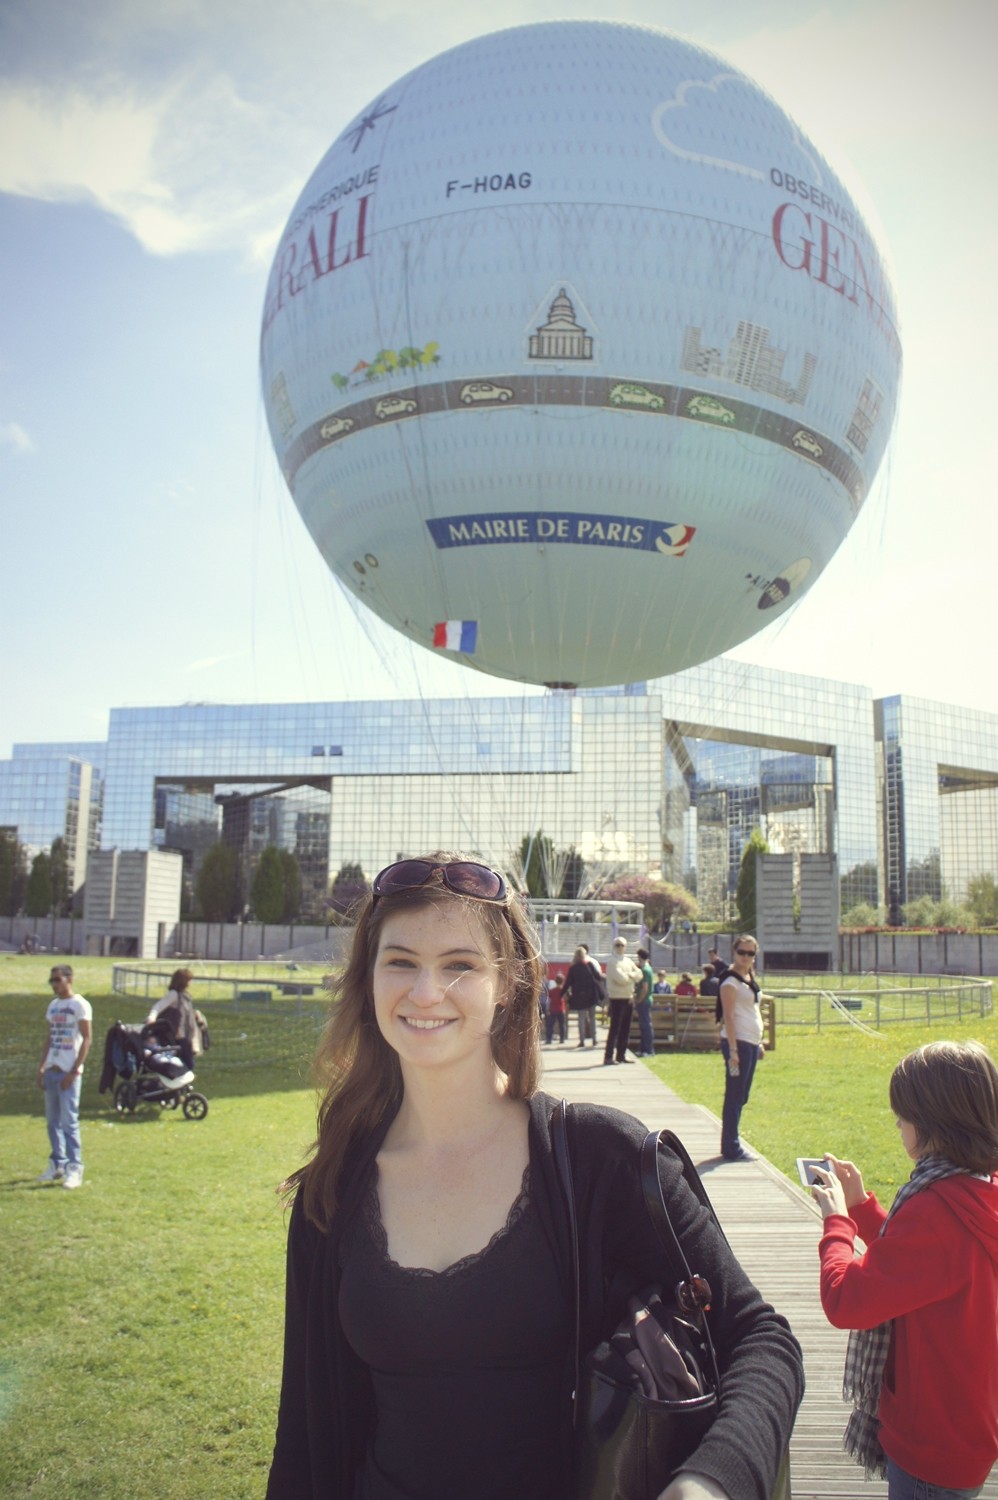 Stéphanie at the Ballon de Paris.